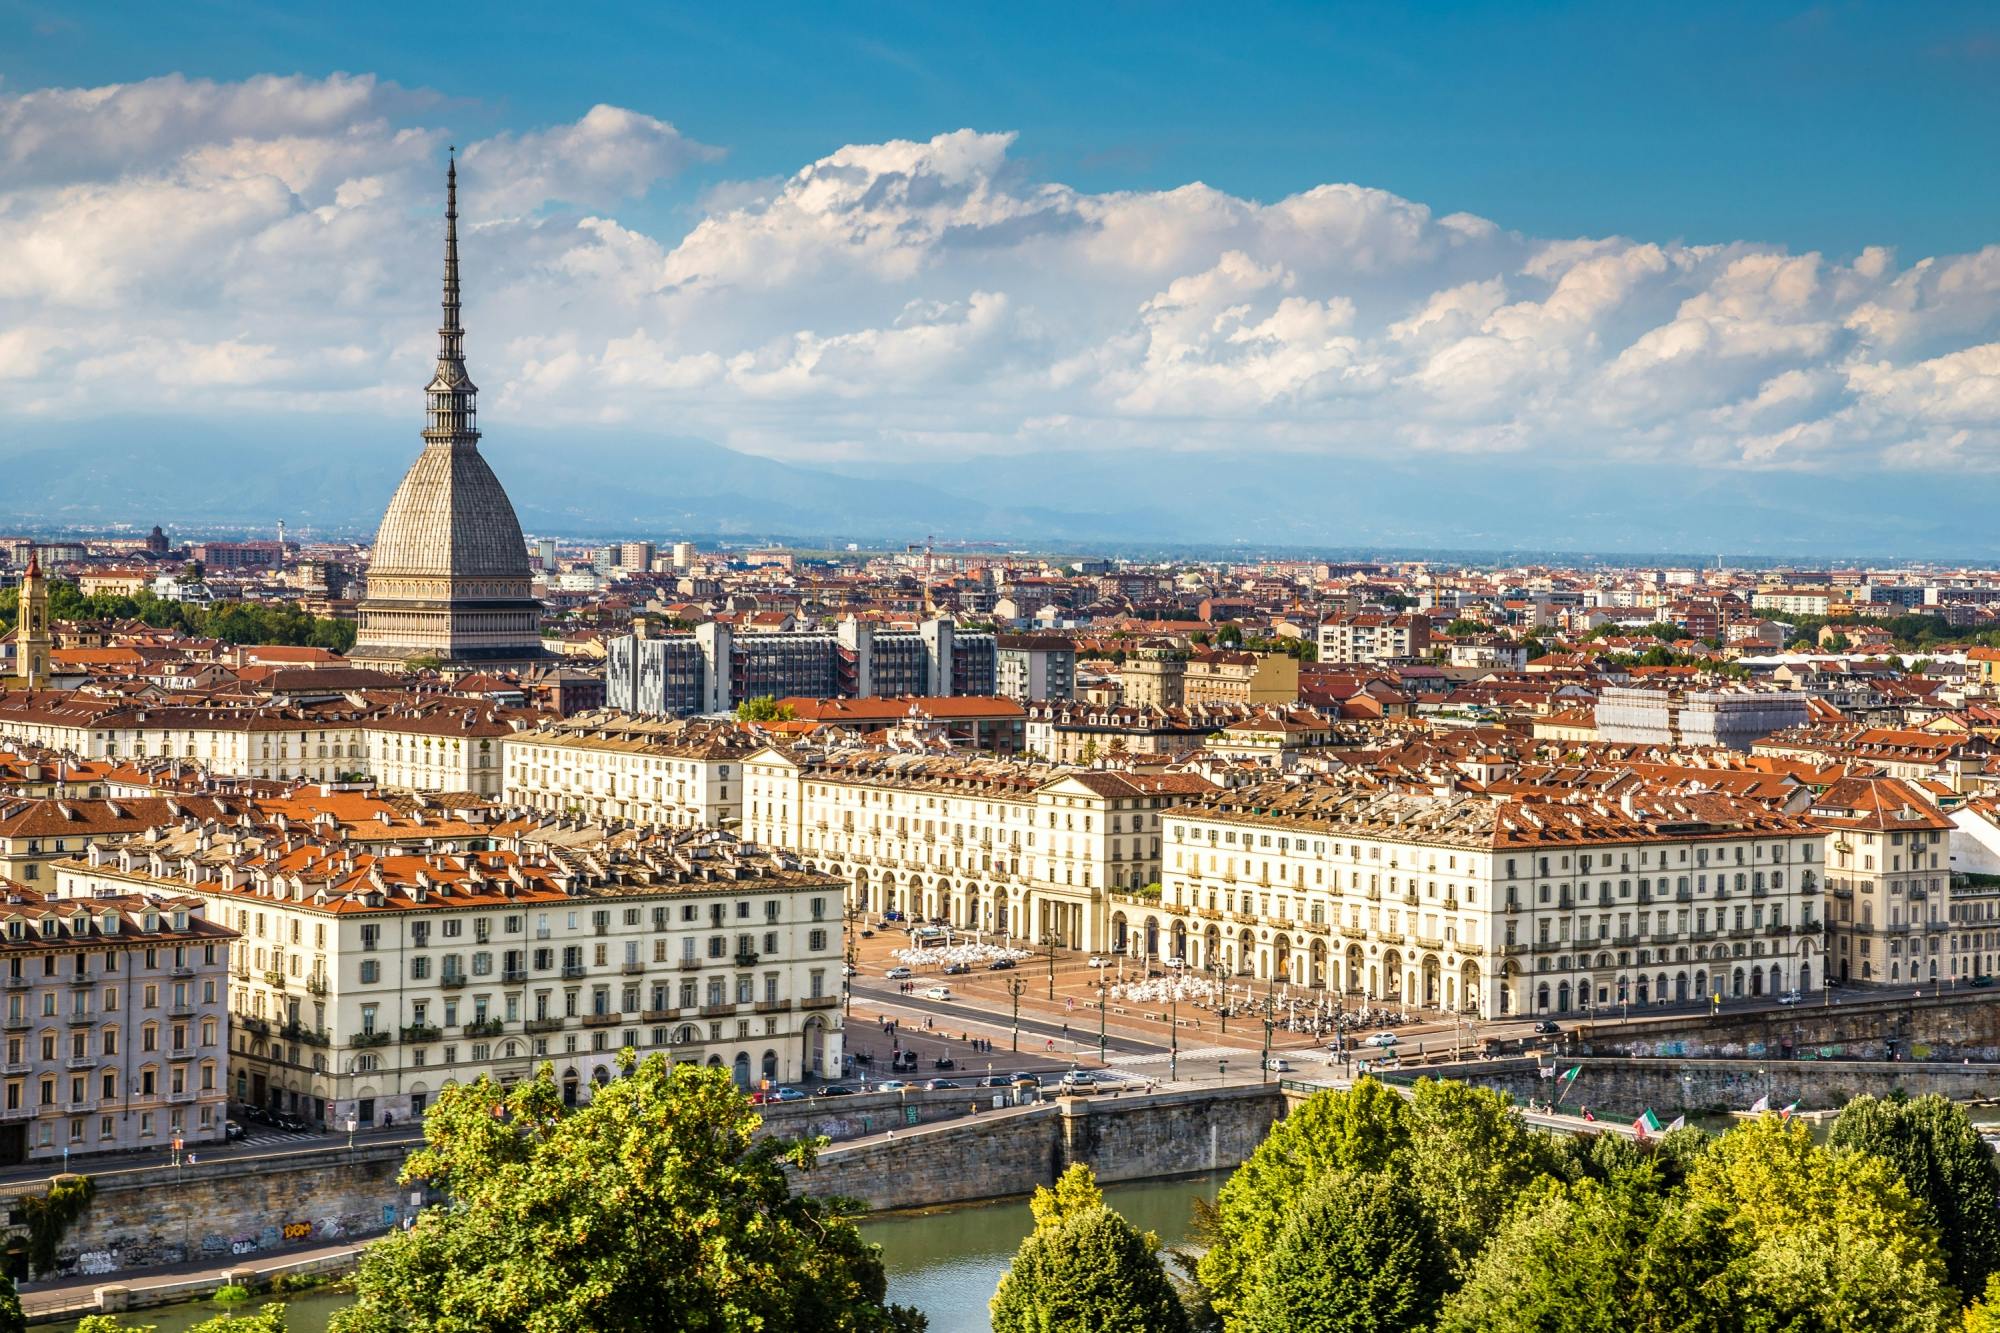 Turin highlights walking tour